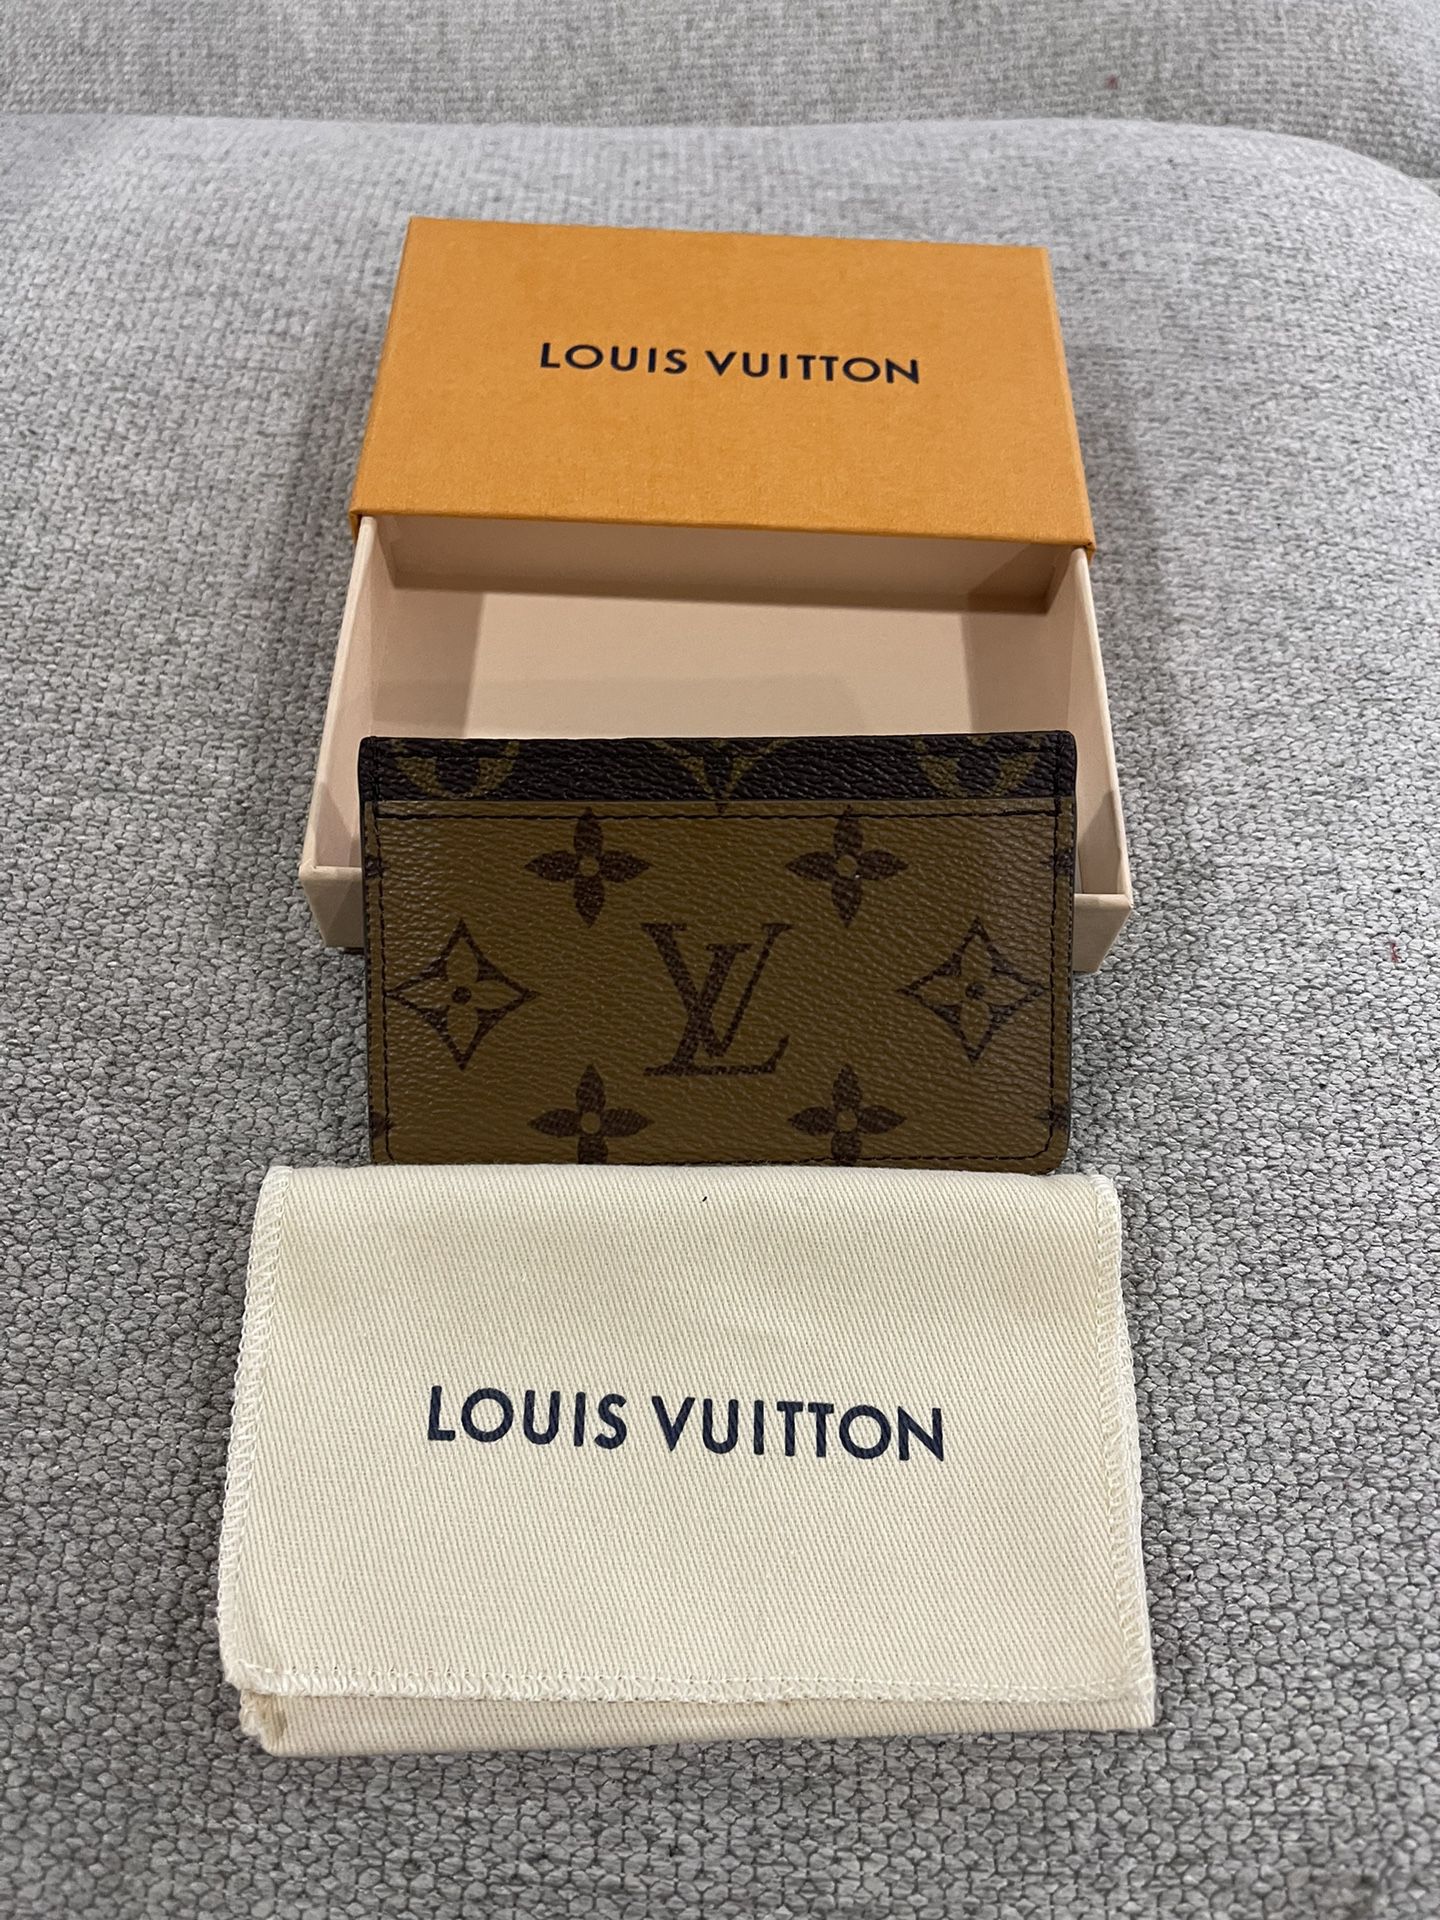 Louis Vuitton Card Holder Authentic